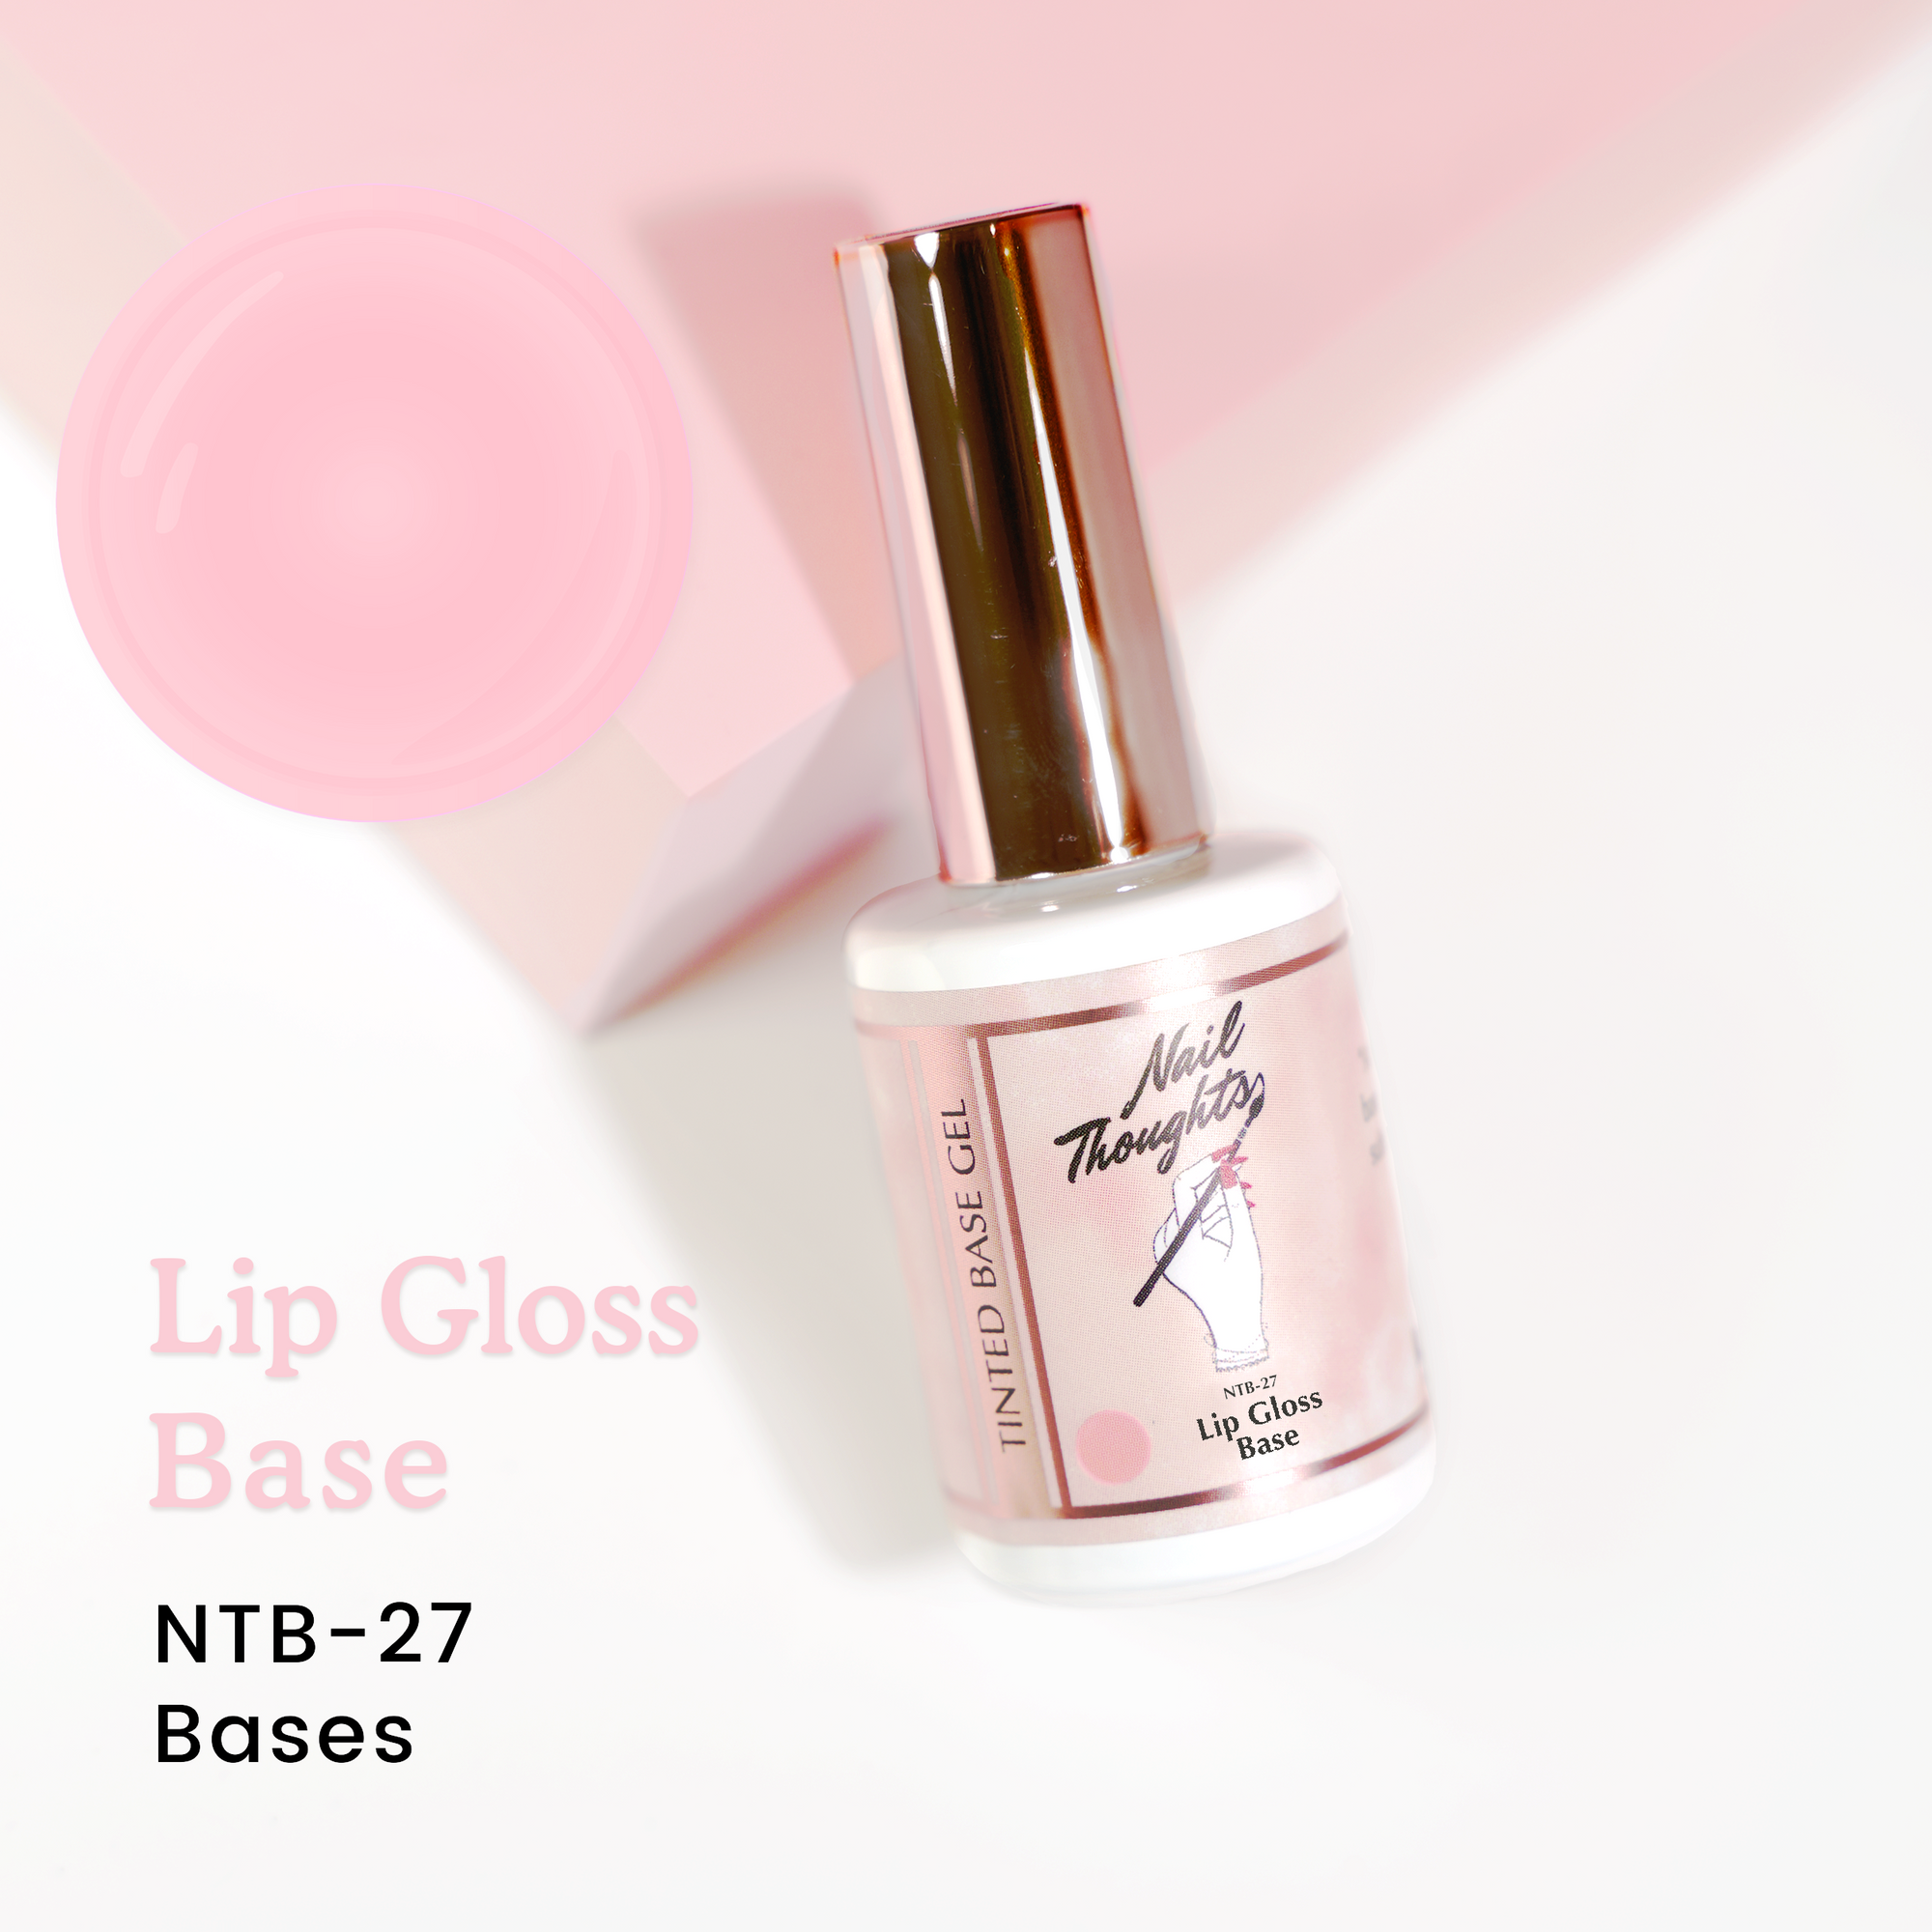 Lip Gloss Base NTB-27